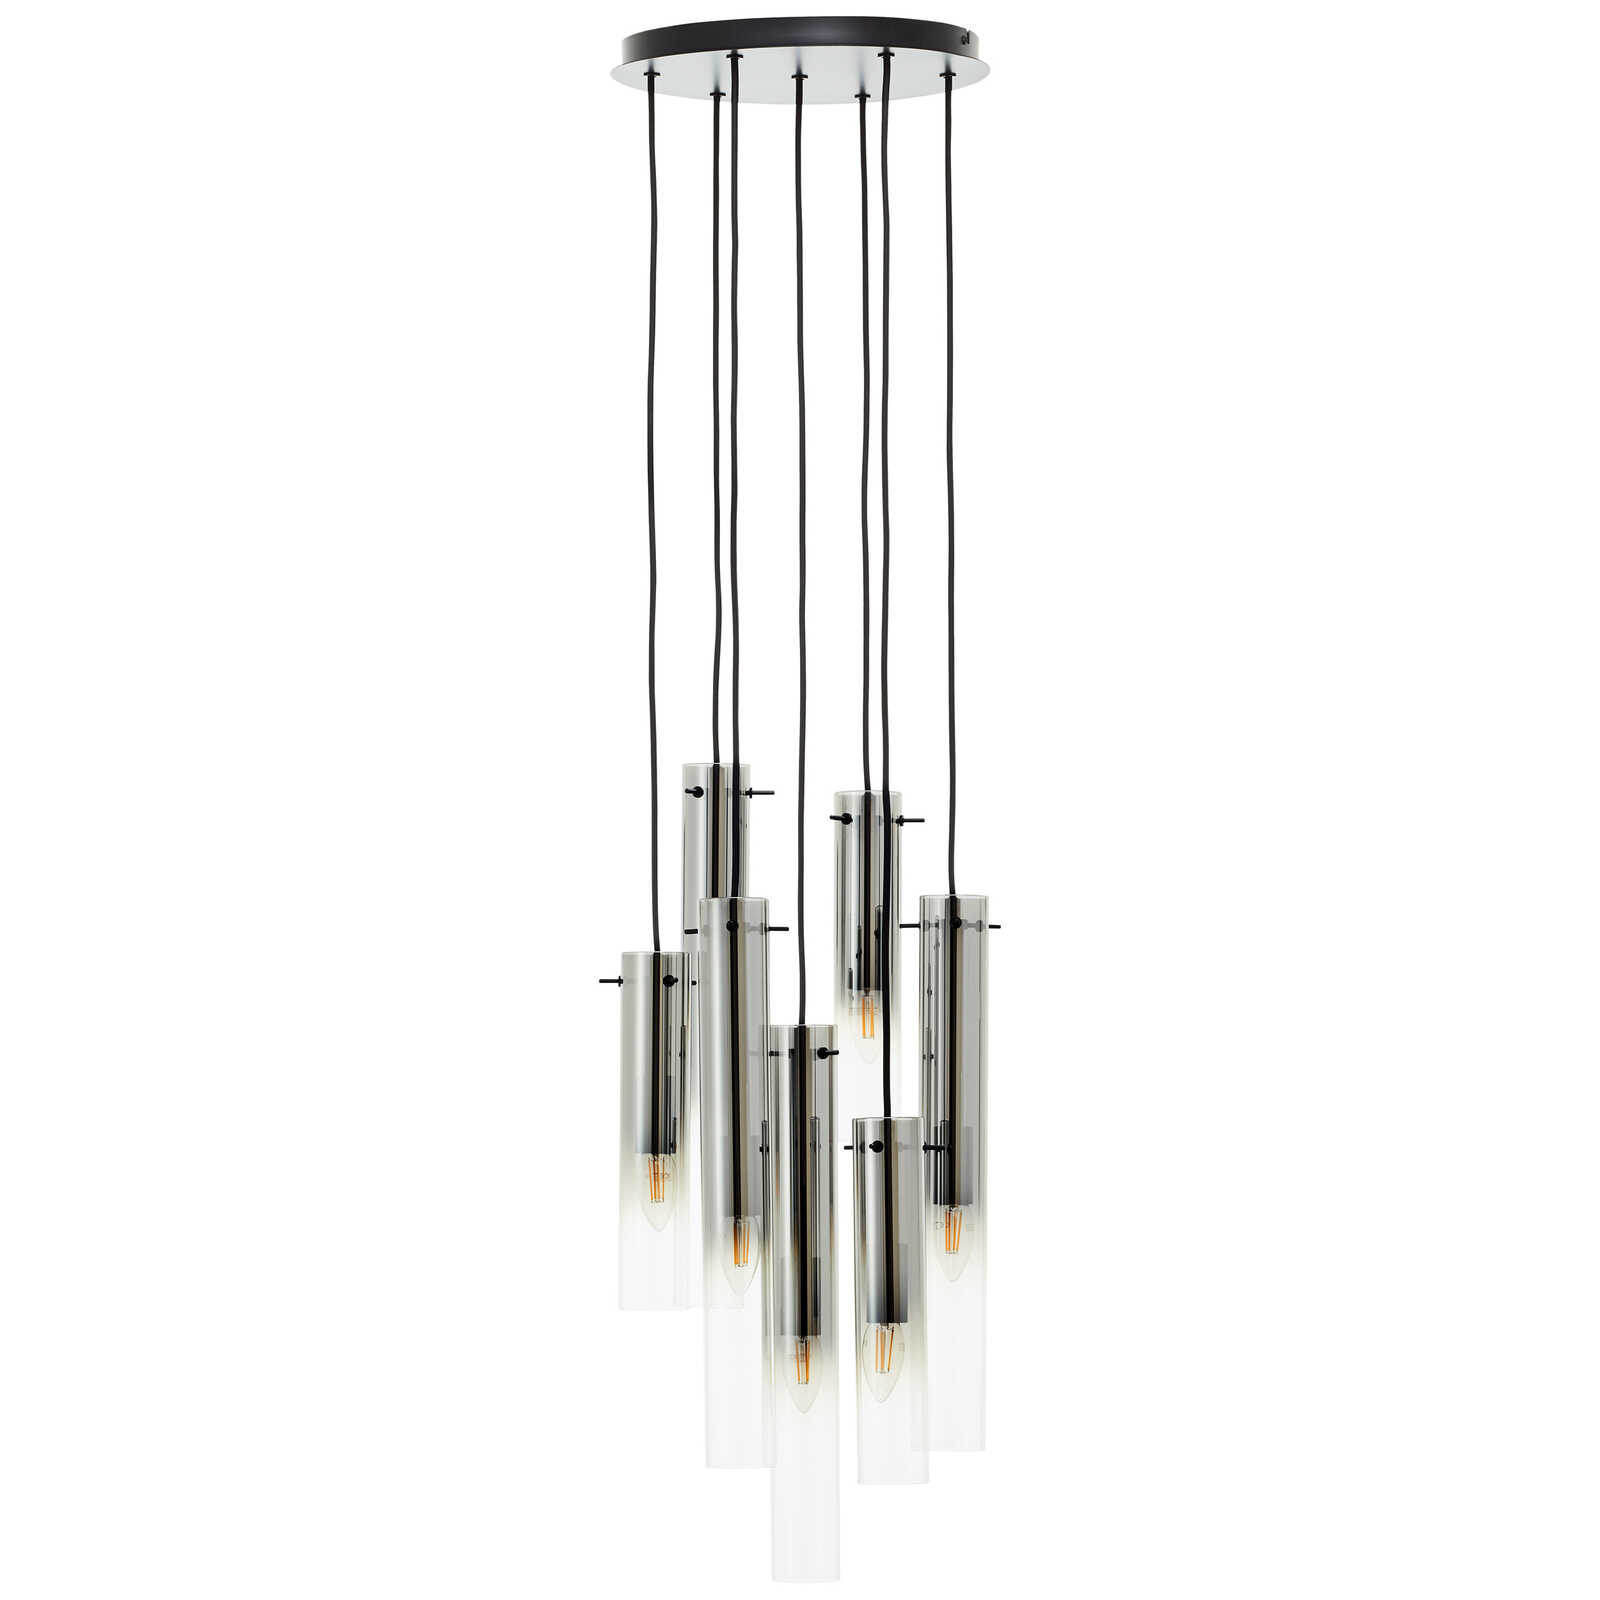             Metalen hanglamp - Hilla 3 - Grijs
        